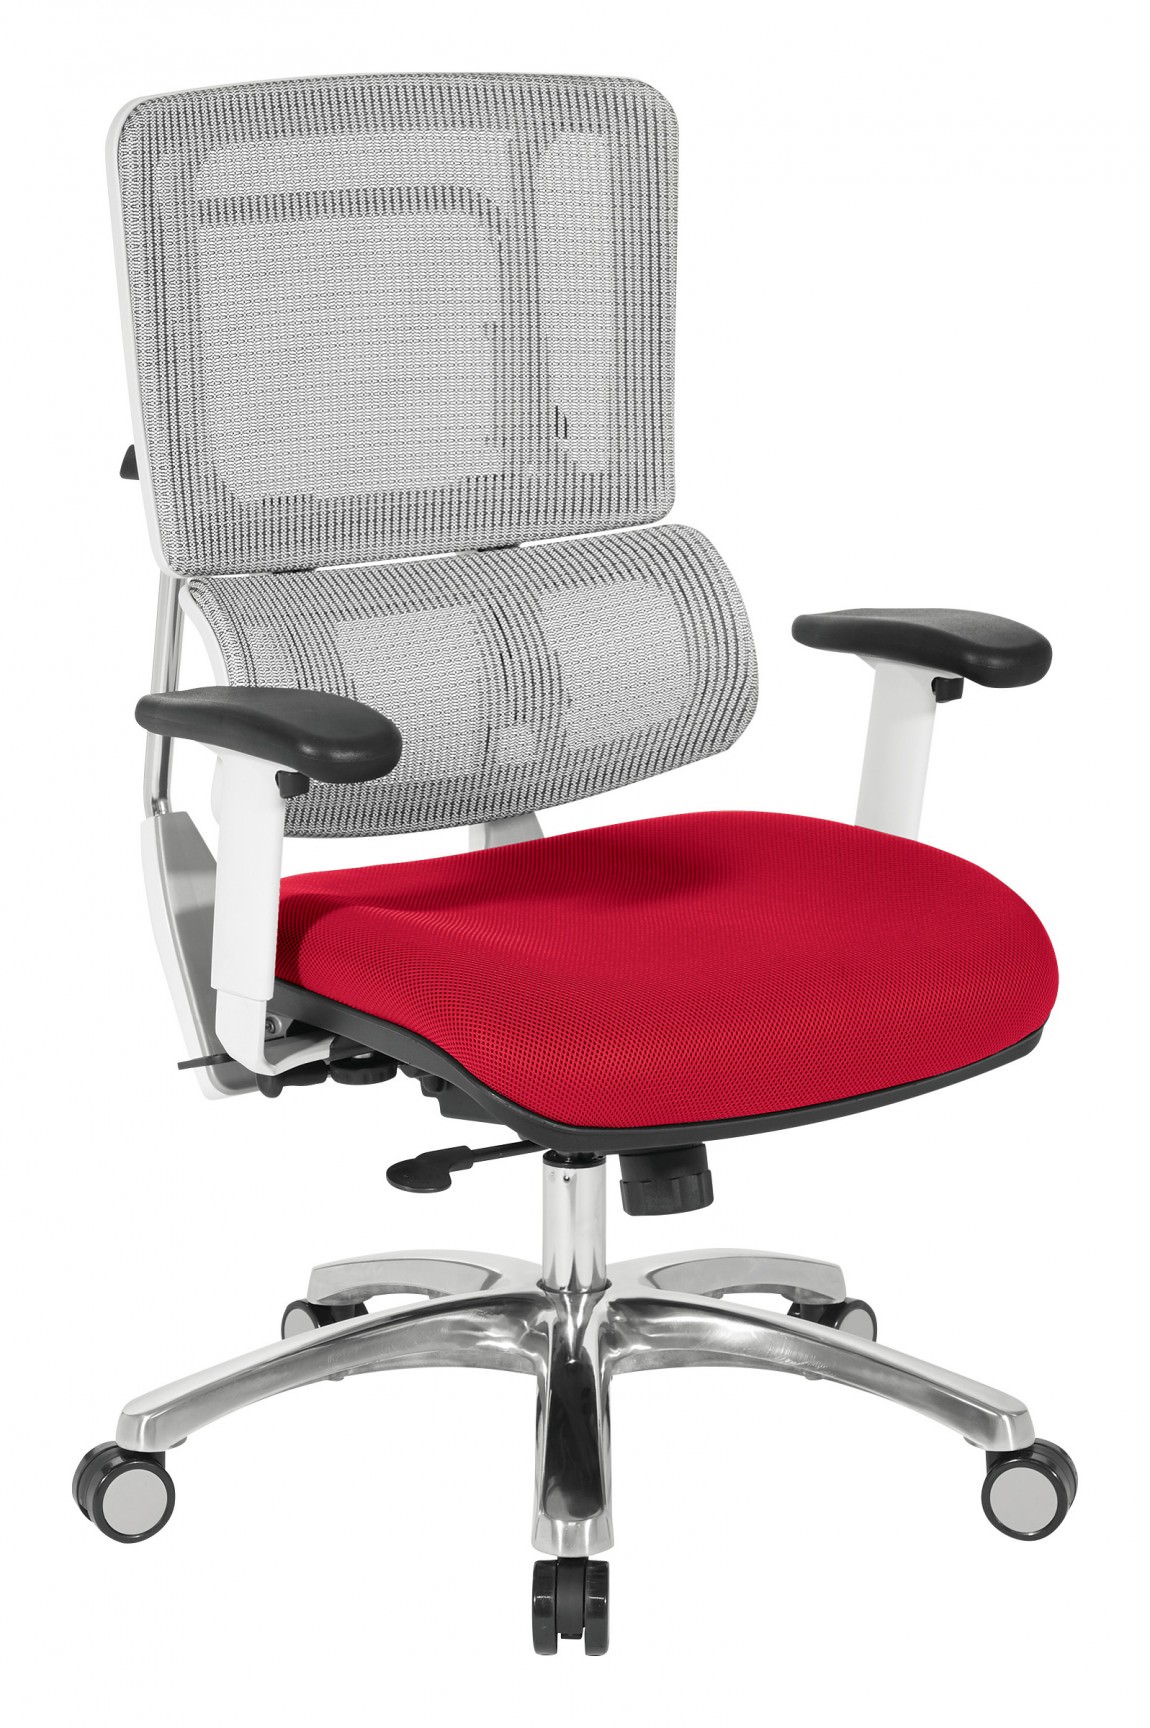 Ergonomic Mesh Back Office Chair